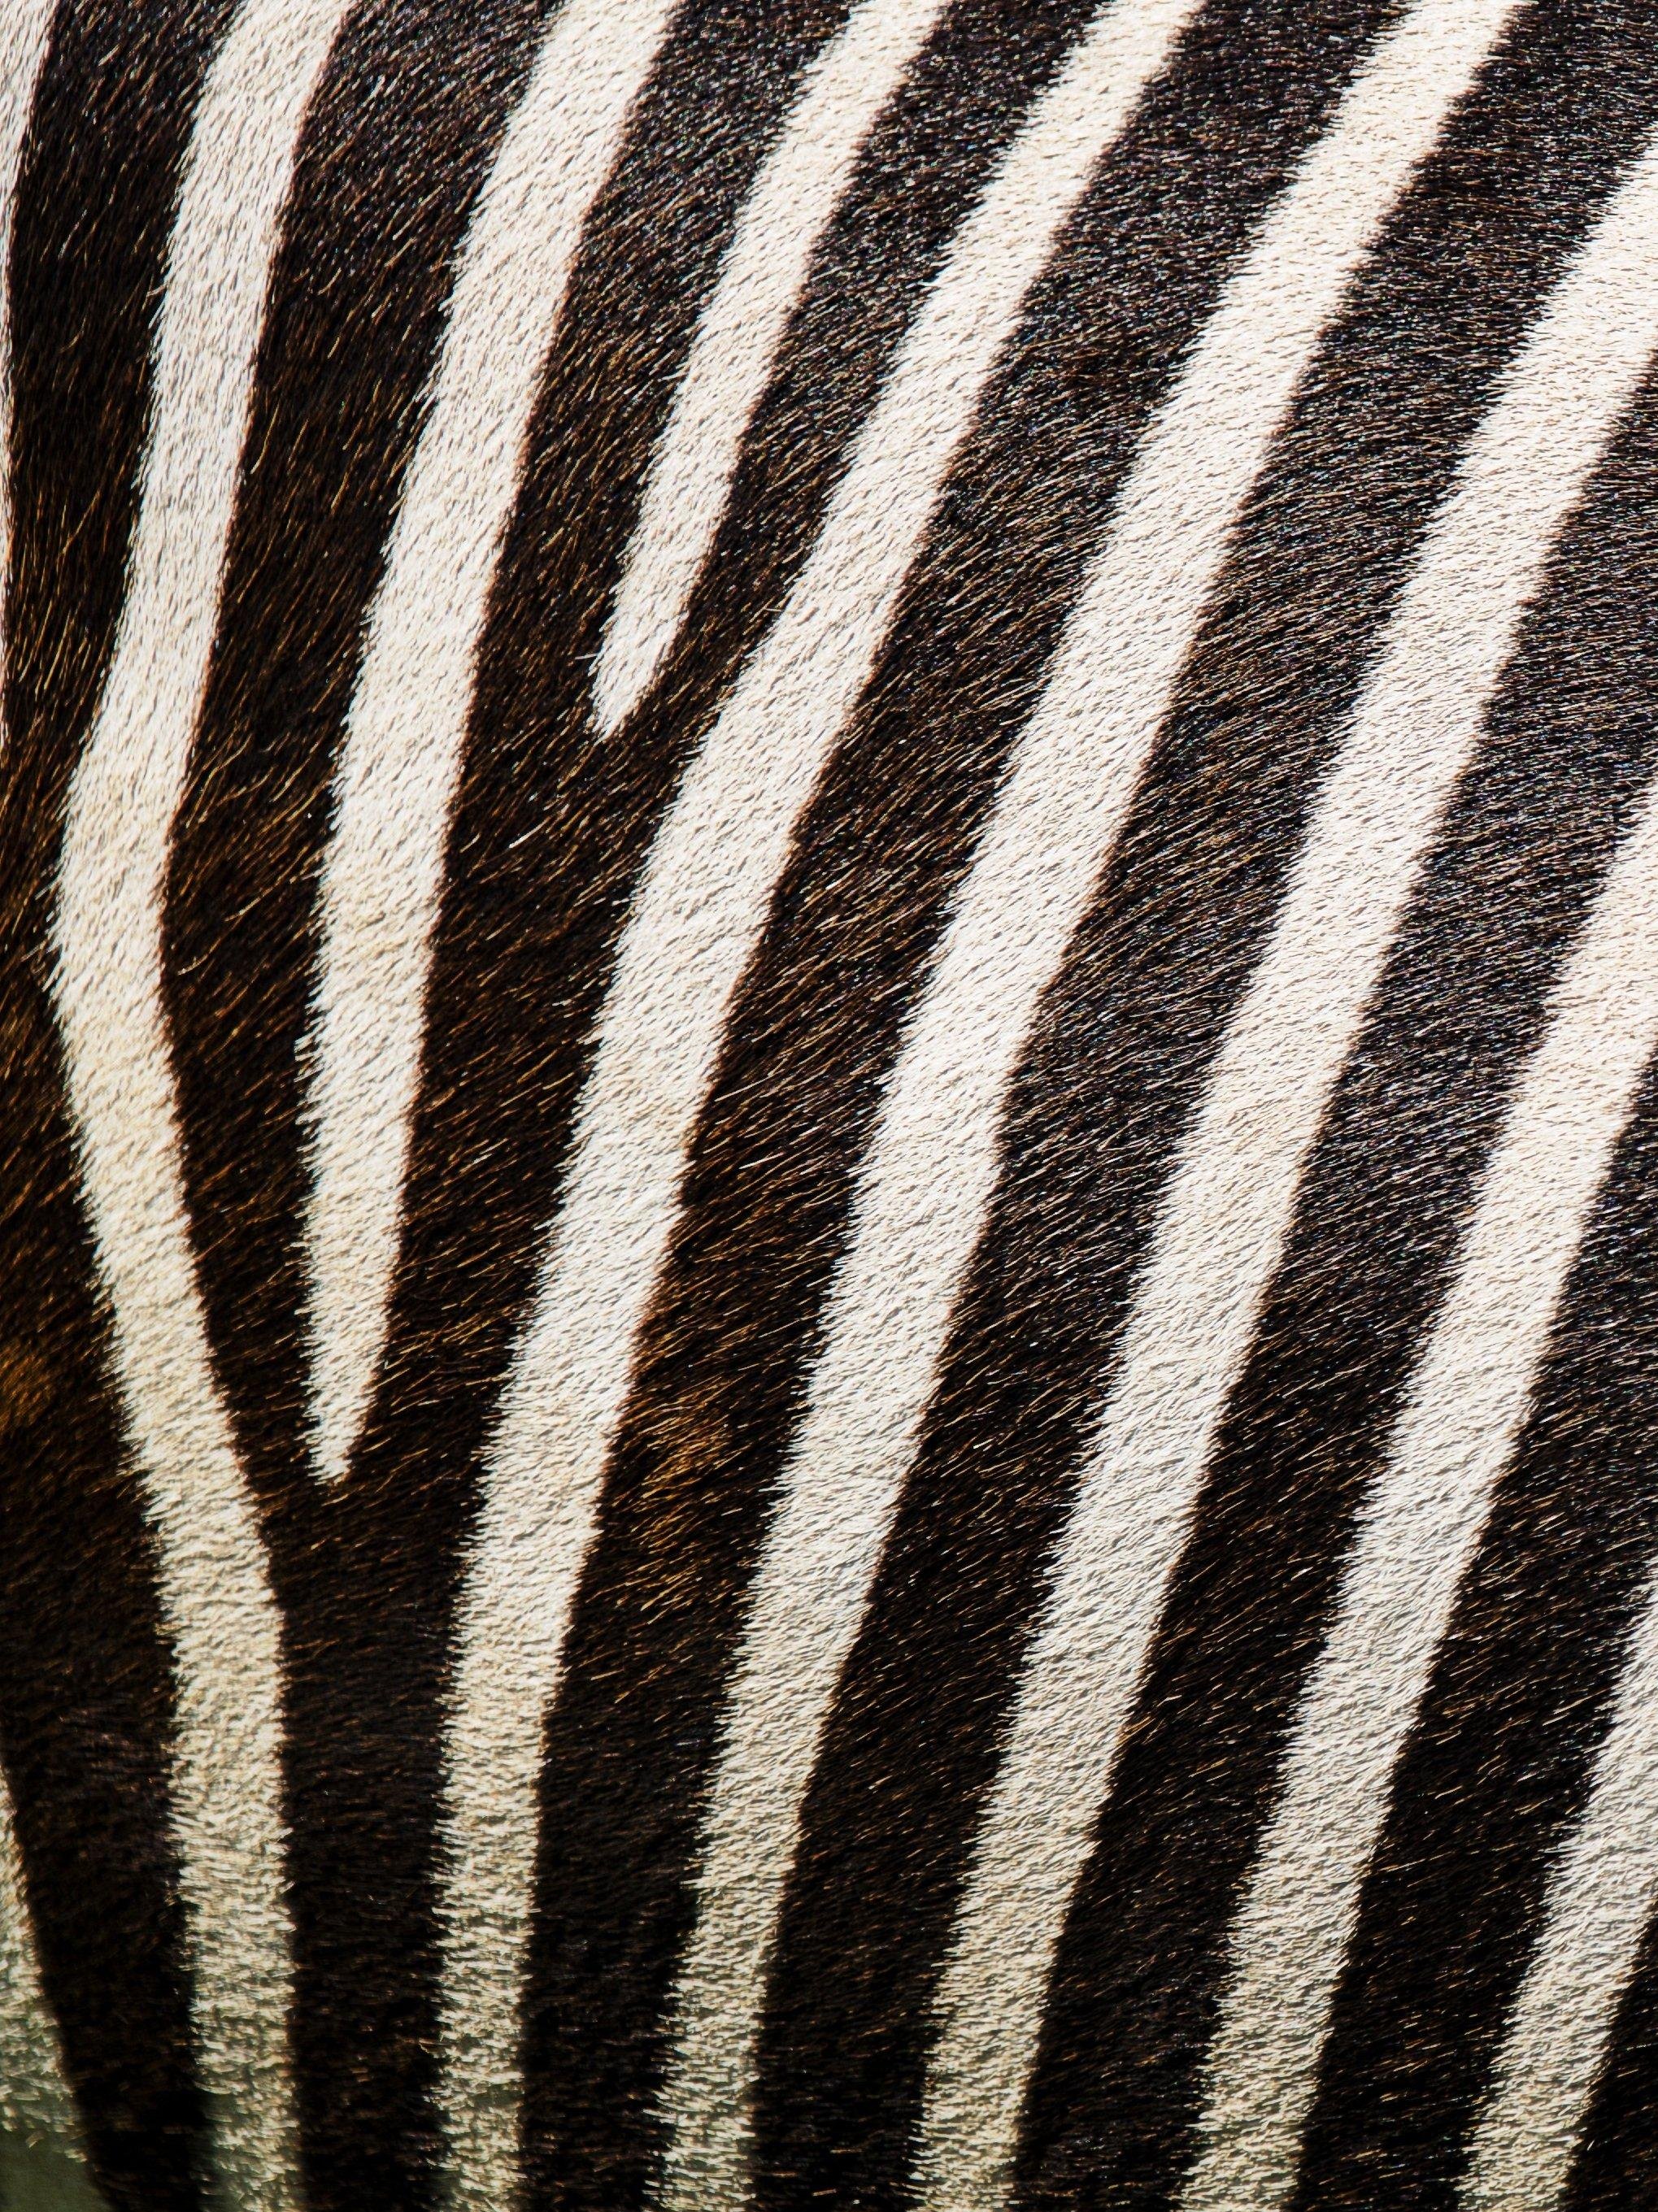 Zebra Texture Wallpaper - iPhone, Android & Desktop Backgrounds